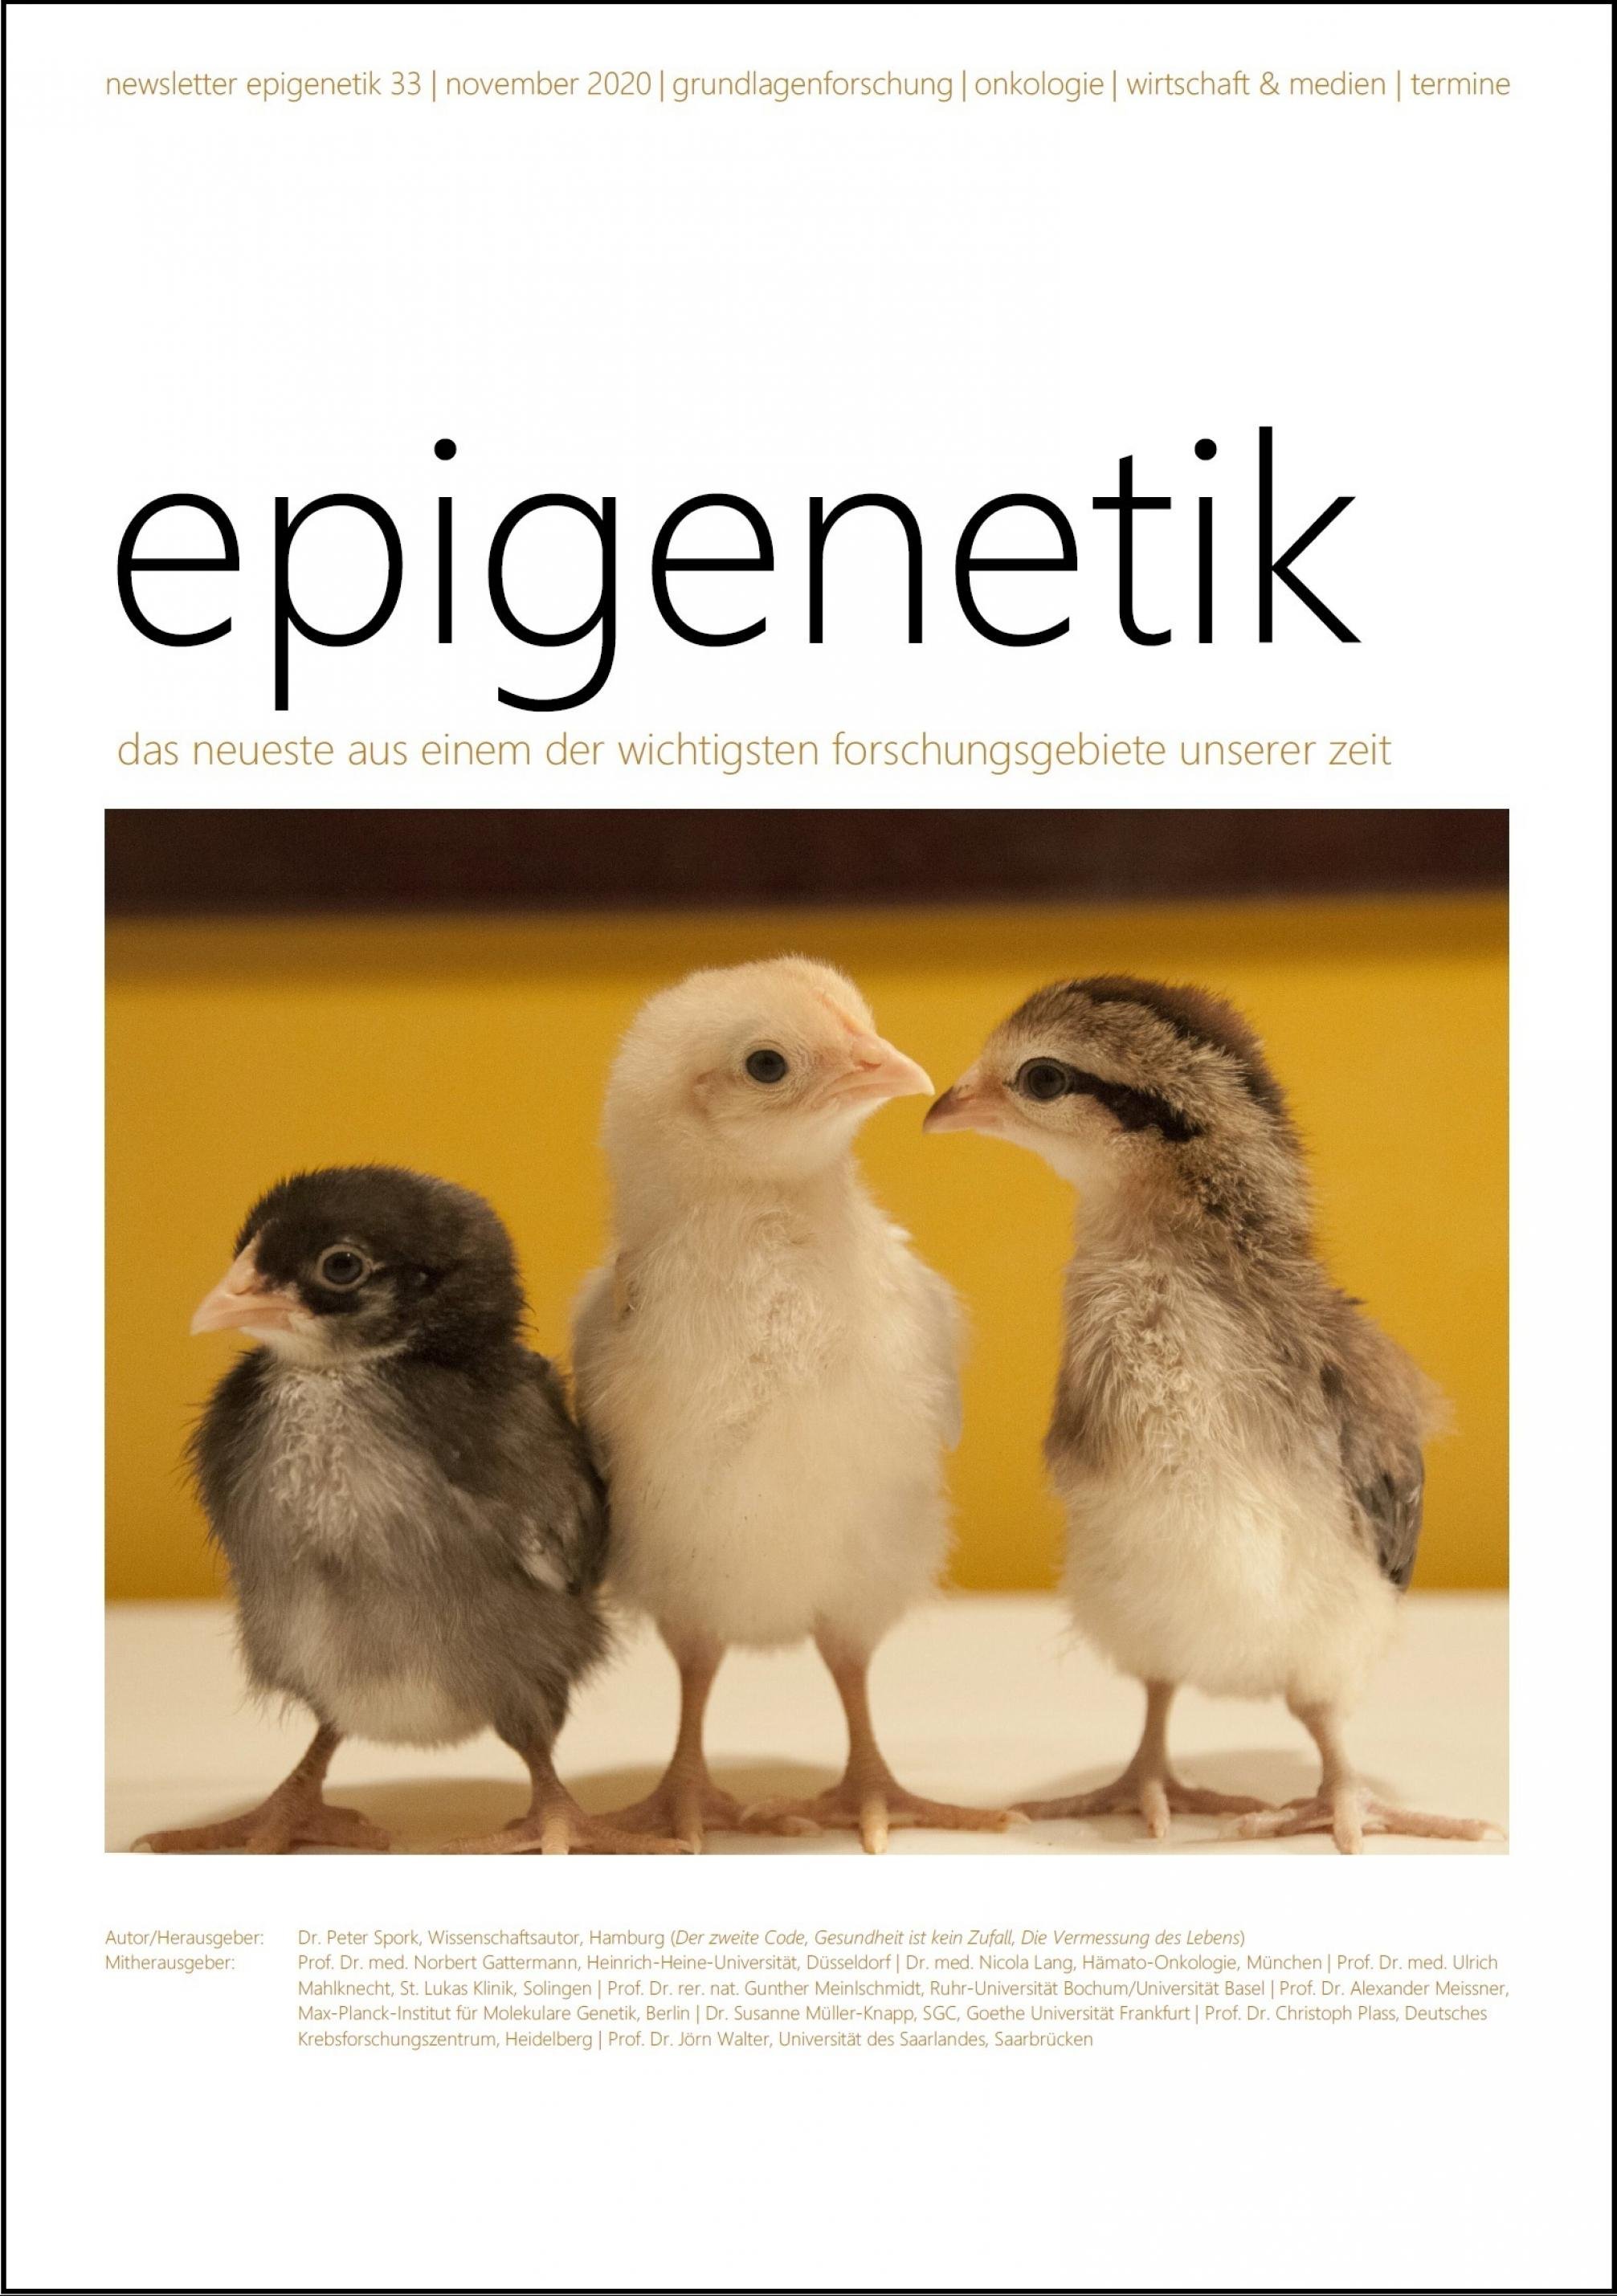 newsletter epigenetik 33 / November 2020 / das neueste aus einem der wichtigsten forschungsgebiete unserer zeit